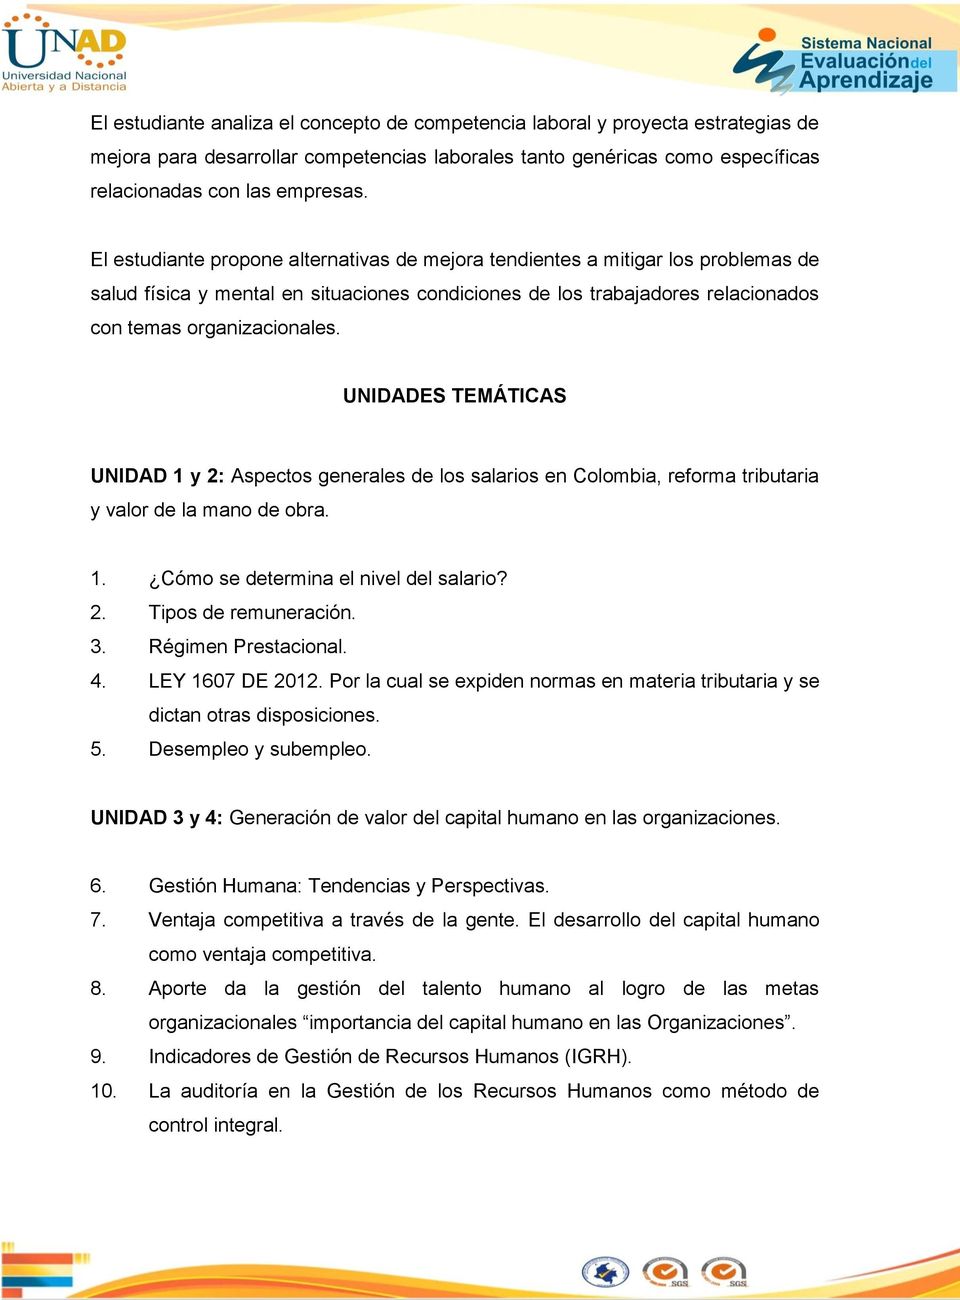 UNIDADES TEMÁTICAS UNIDAD 1 y 2: Aspectos generales de los salarios en Colombia, reforma tributaria y valor de la mano de obra. 1. Cómo se determina el nivel del salario? 2. Tipos de remuneración. 3.